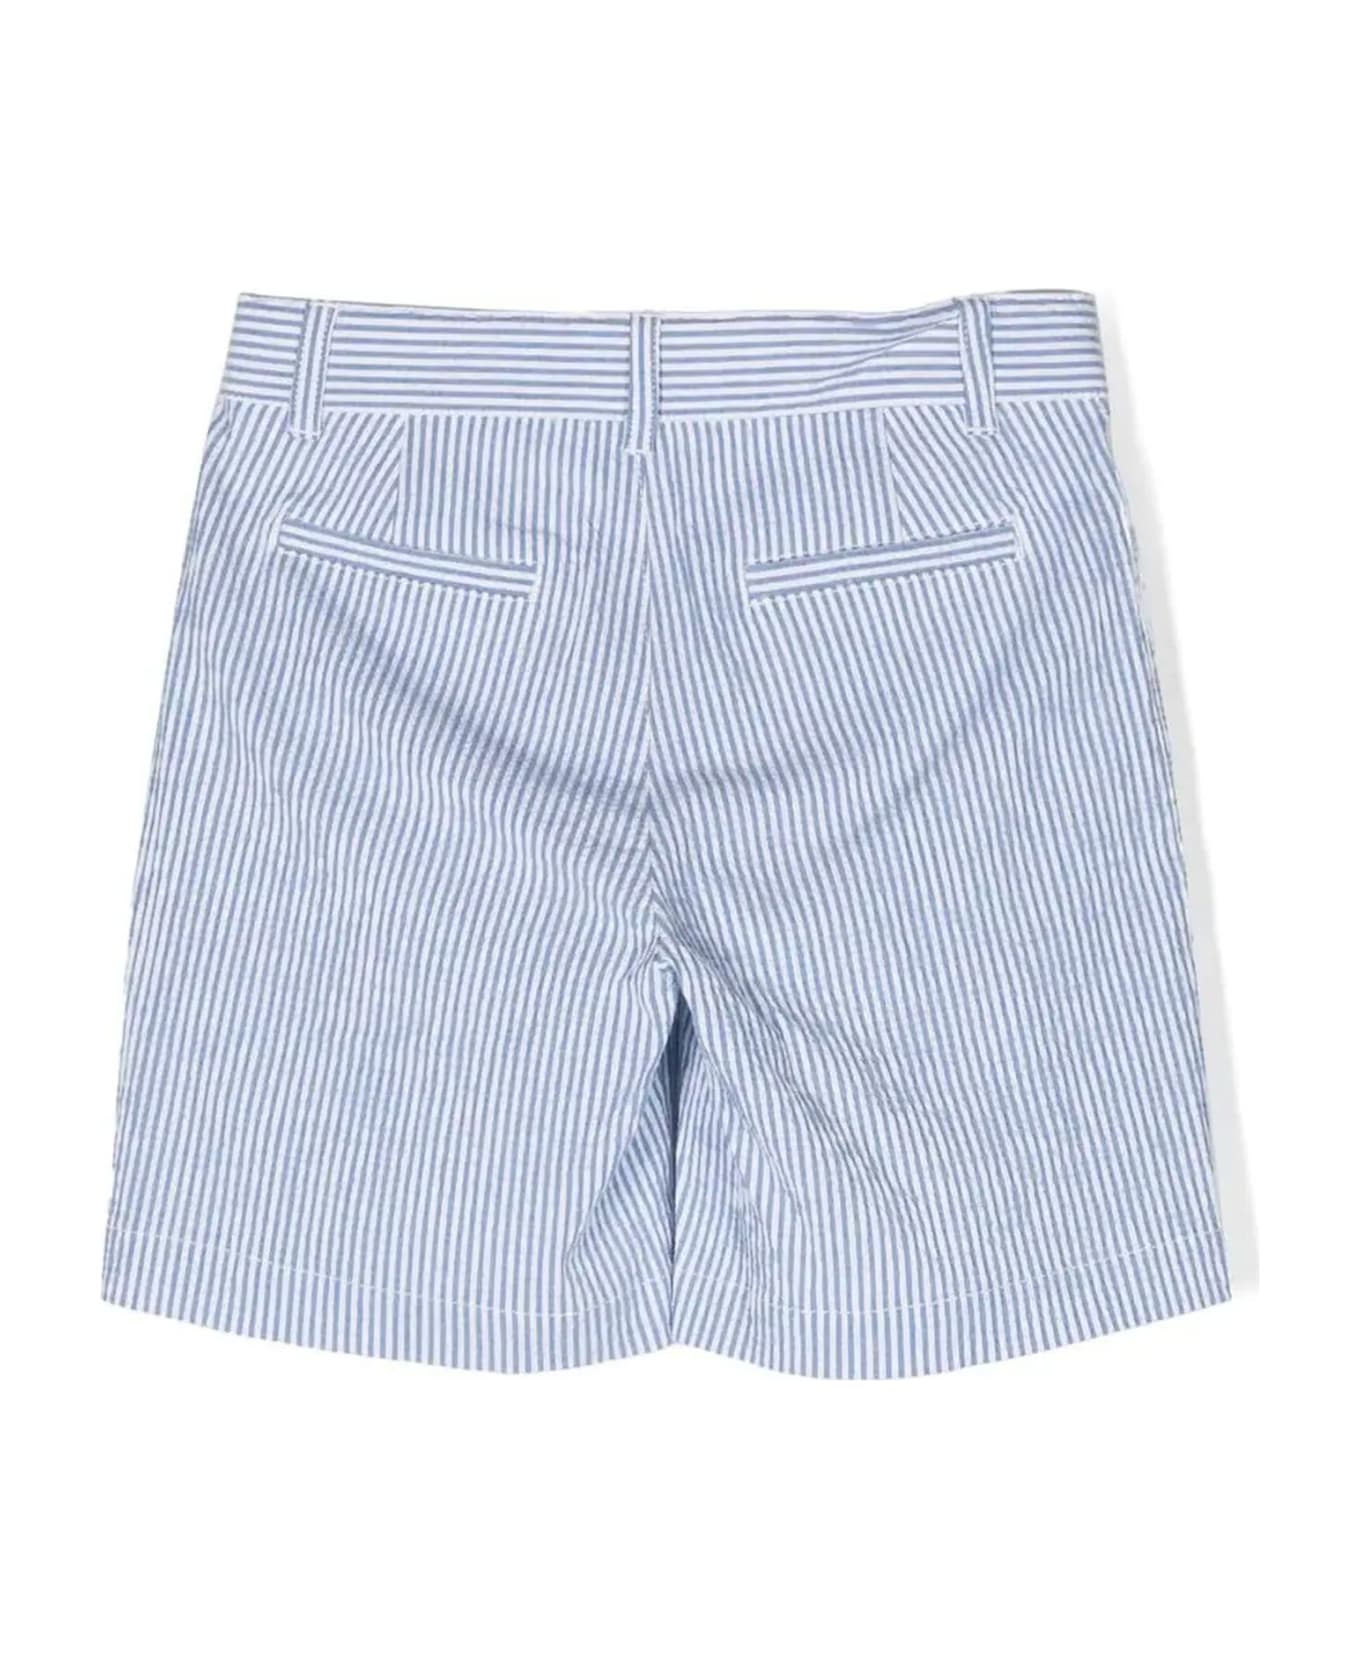 Aspesi Shorts - Bianco+azzurro ボトムス